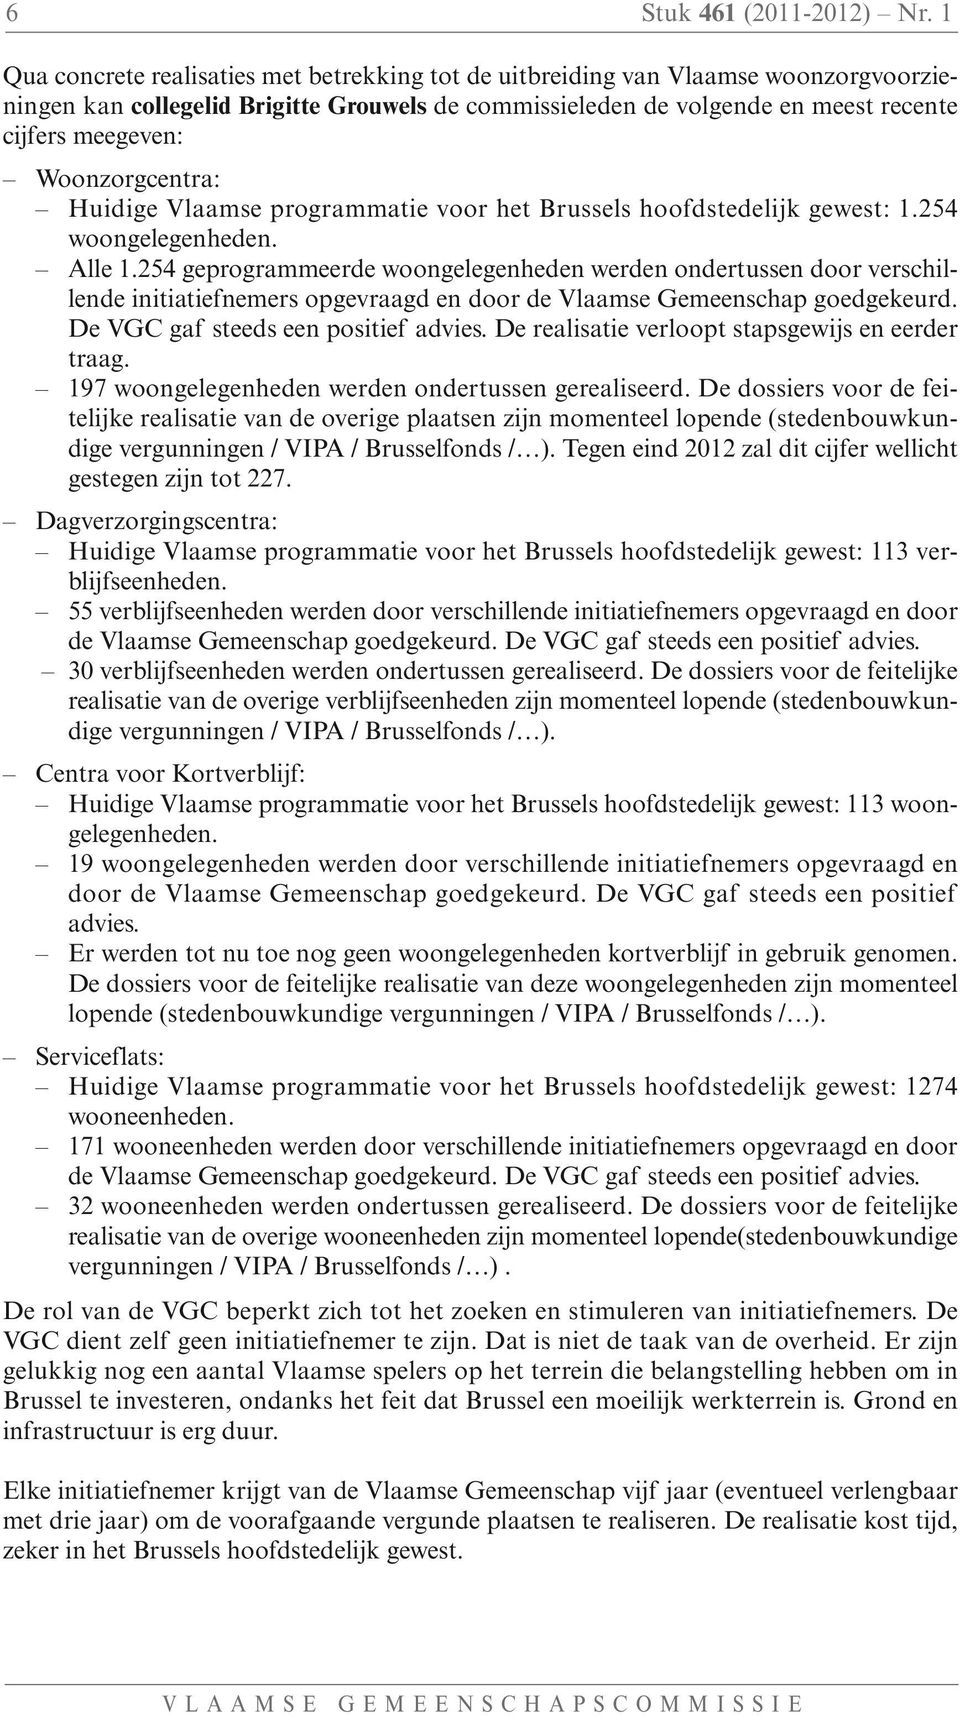 Woonzorgcentra: Huidige Vlaamse programmatie voor het Brussels hoofdstedelijk gewest: 1.254 woongelegenheden. Alle 1.